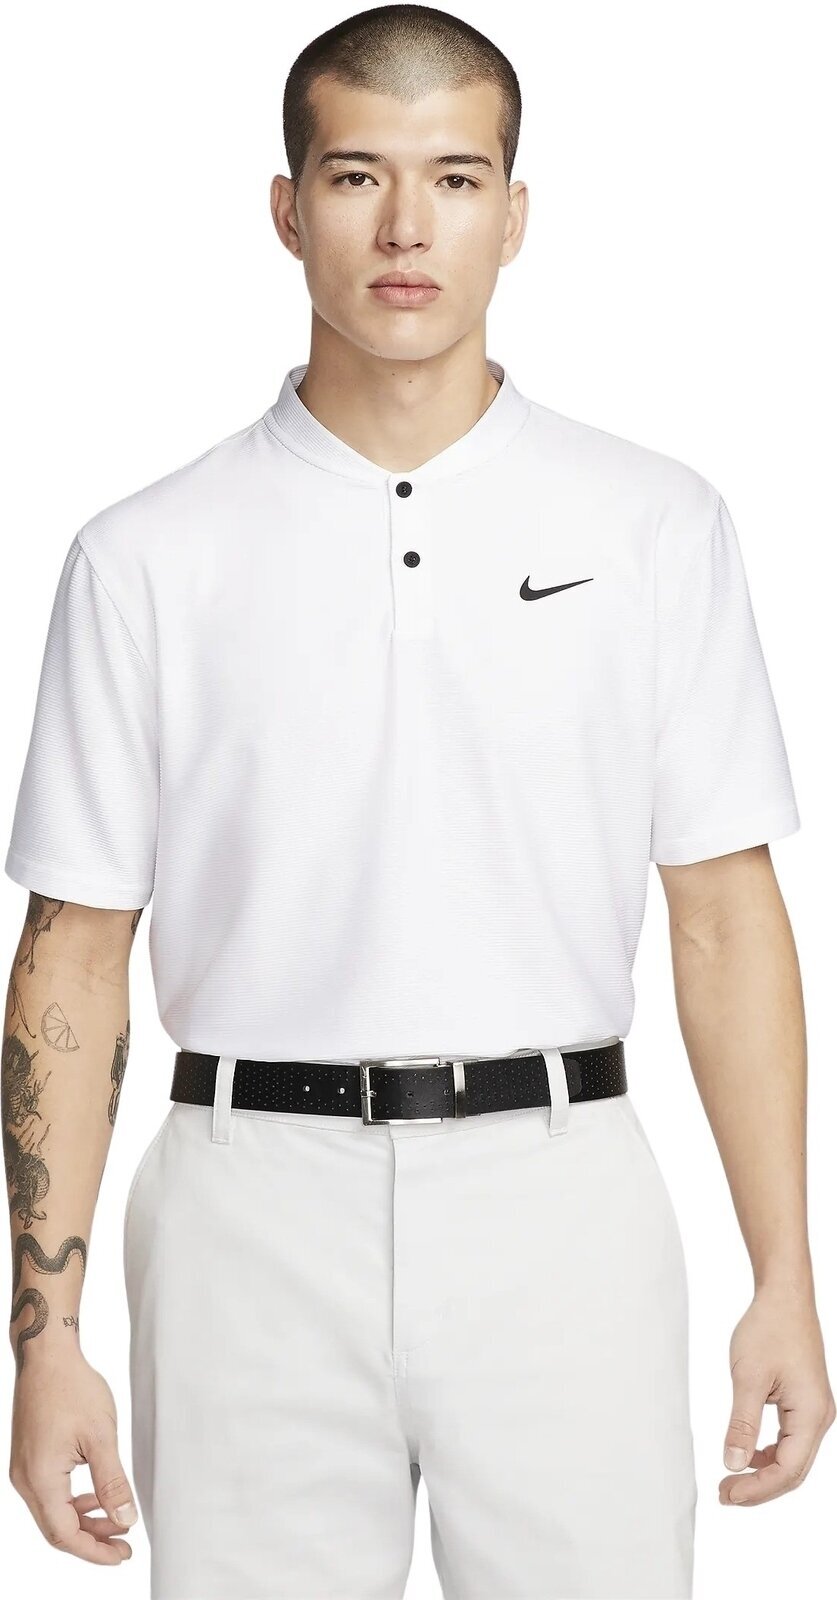 Πουκάμισα Πόλο Nike Dri-Fit Victory Texture Mens Polo White/Black XL